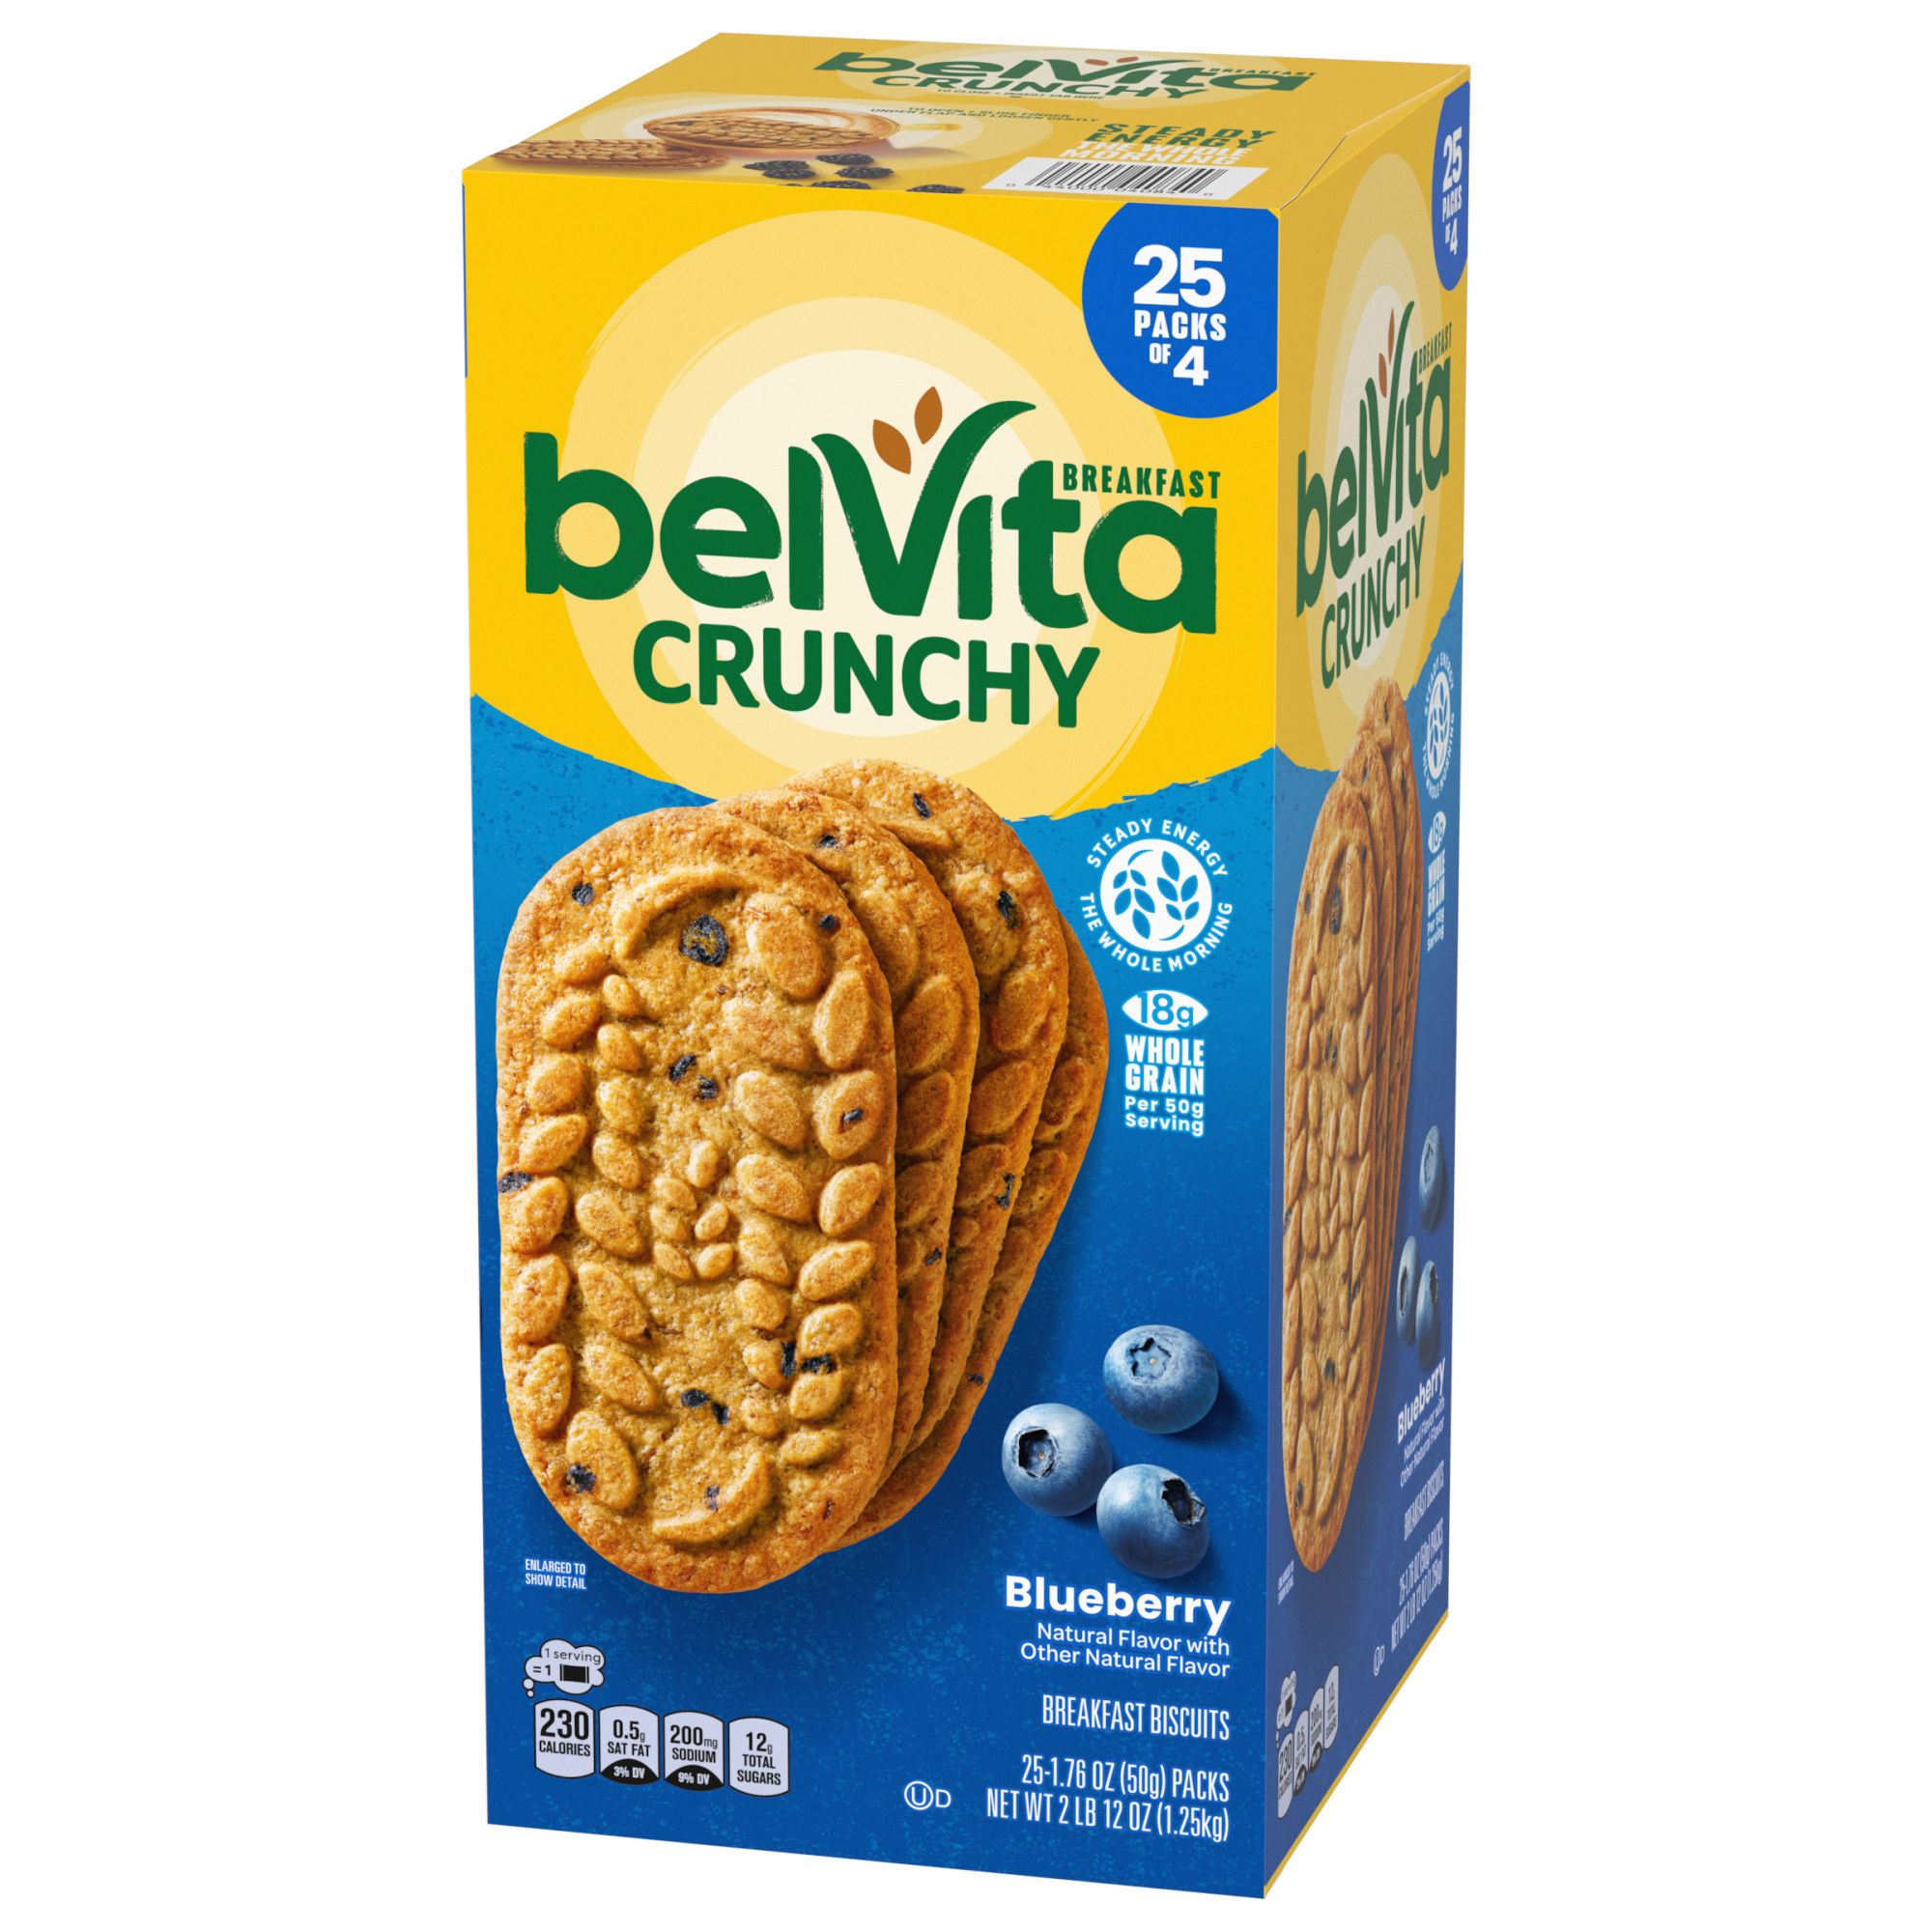 belVita Blueberry Breakfast Biscuits, 25 ct.